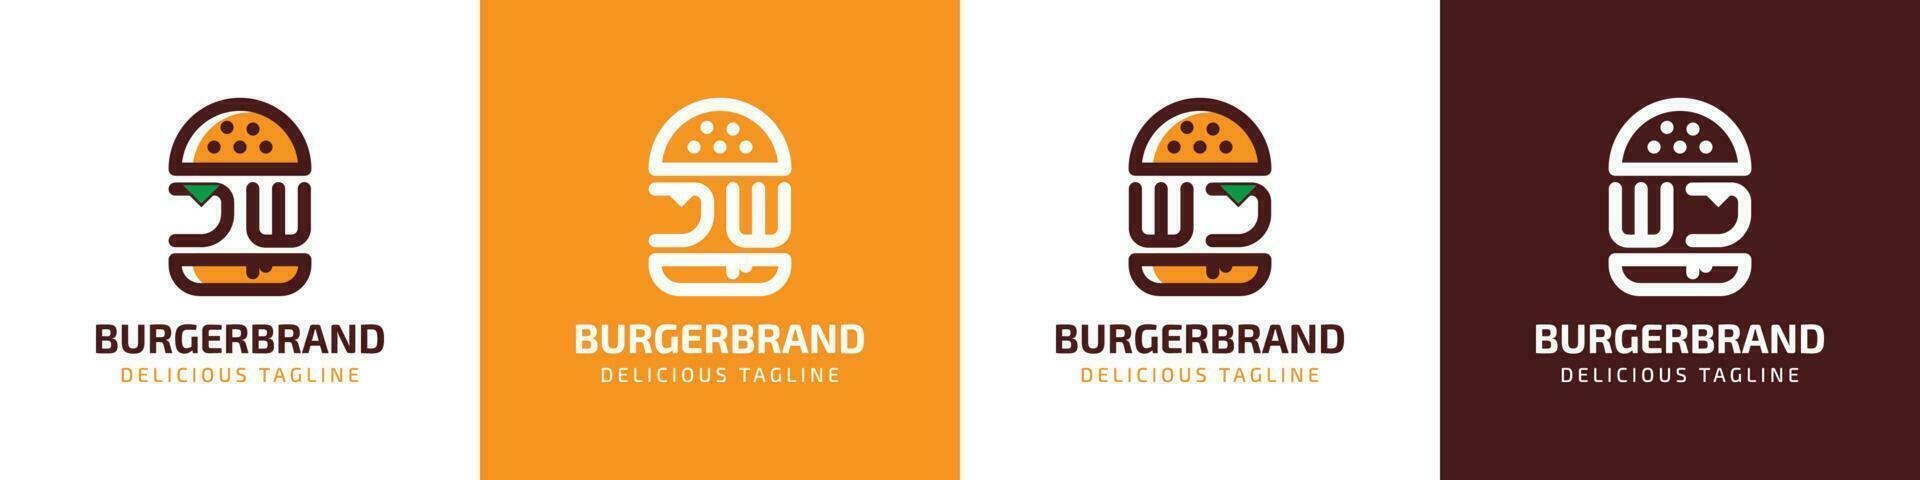 carta jw e wj hamburguer logotipo, adequado para qualquer o negócio relacionado para hamburguer com jw ou wj iniciais. vetor